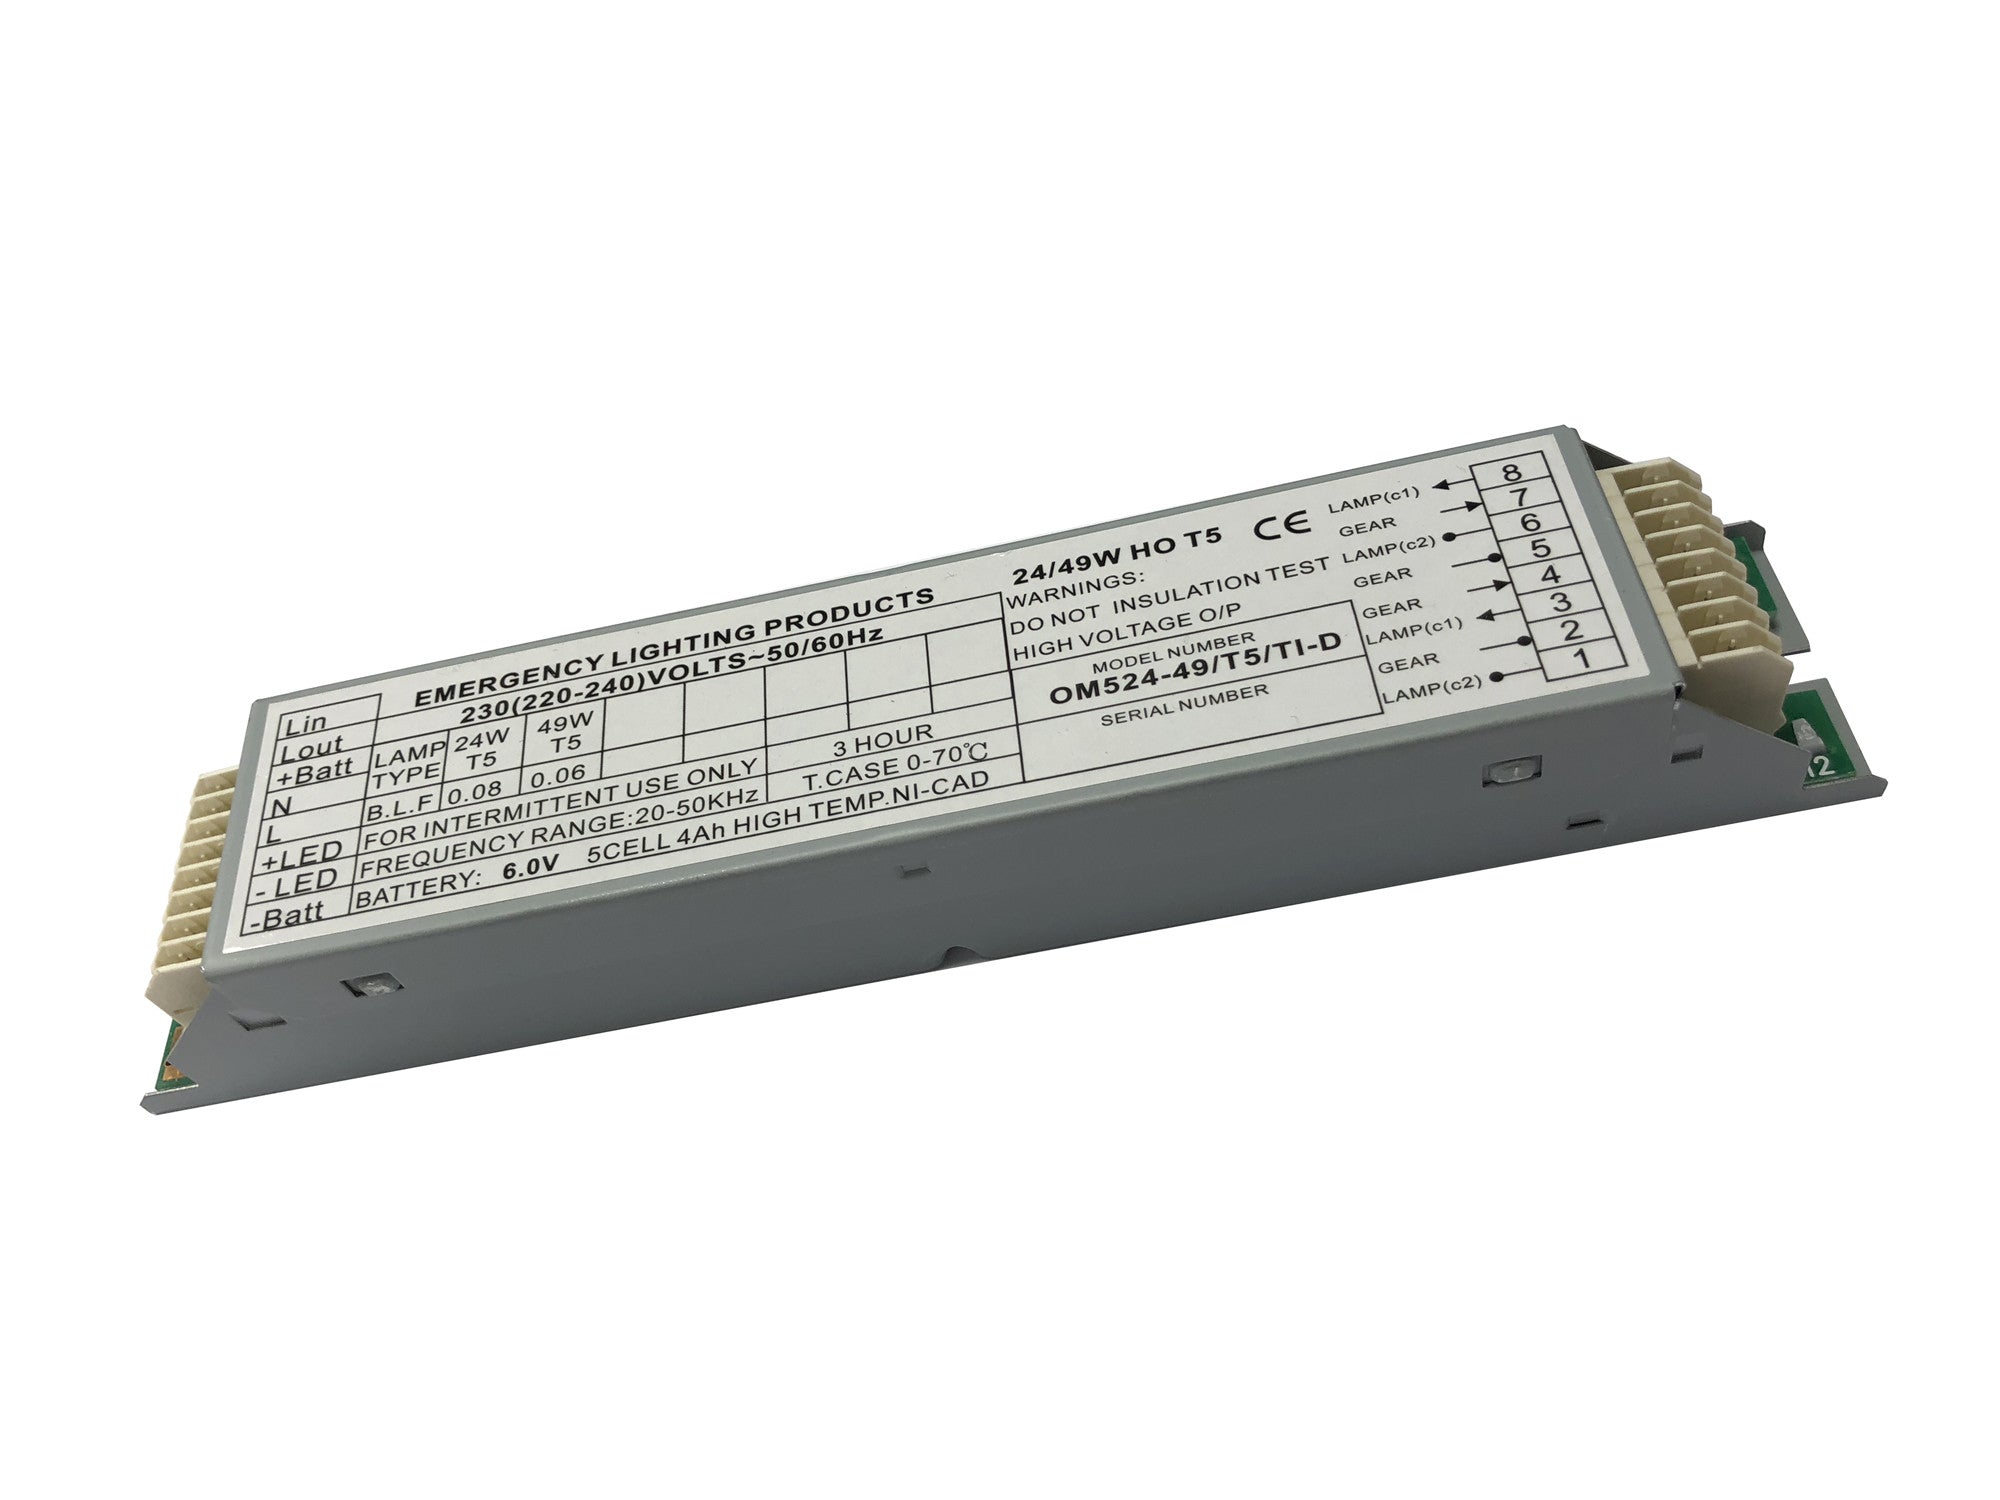 ELP  OM/524-49/T5/TI 24-49w Emergency Module ELP Modules Emergency Lighting Products - Easy Control Gear